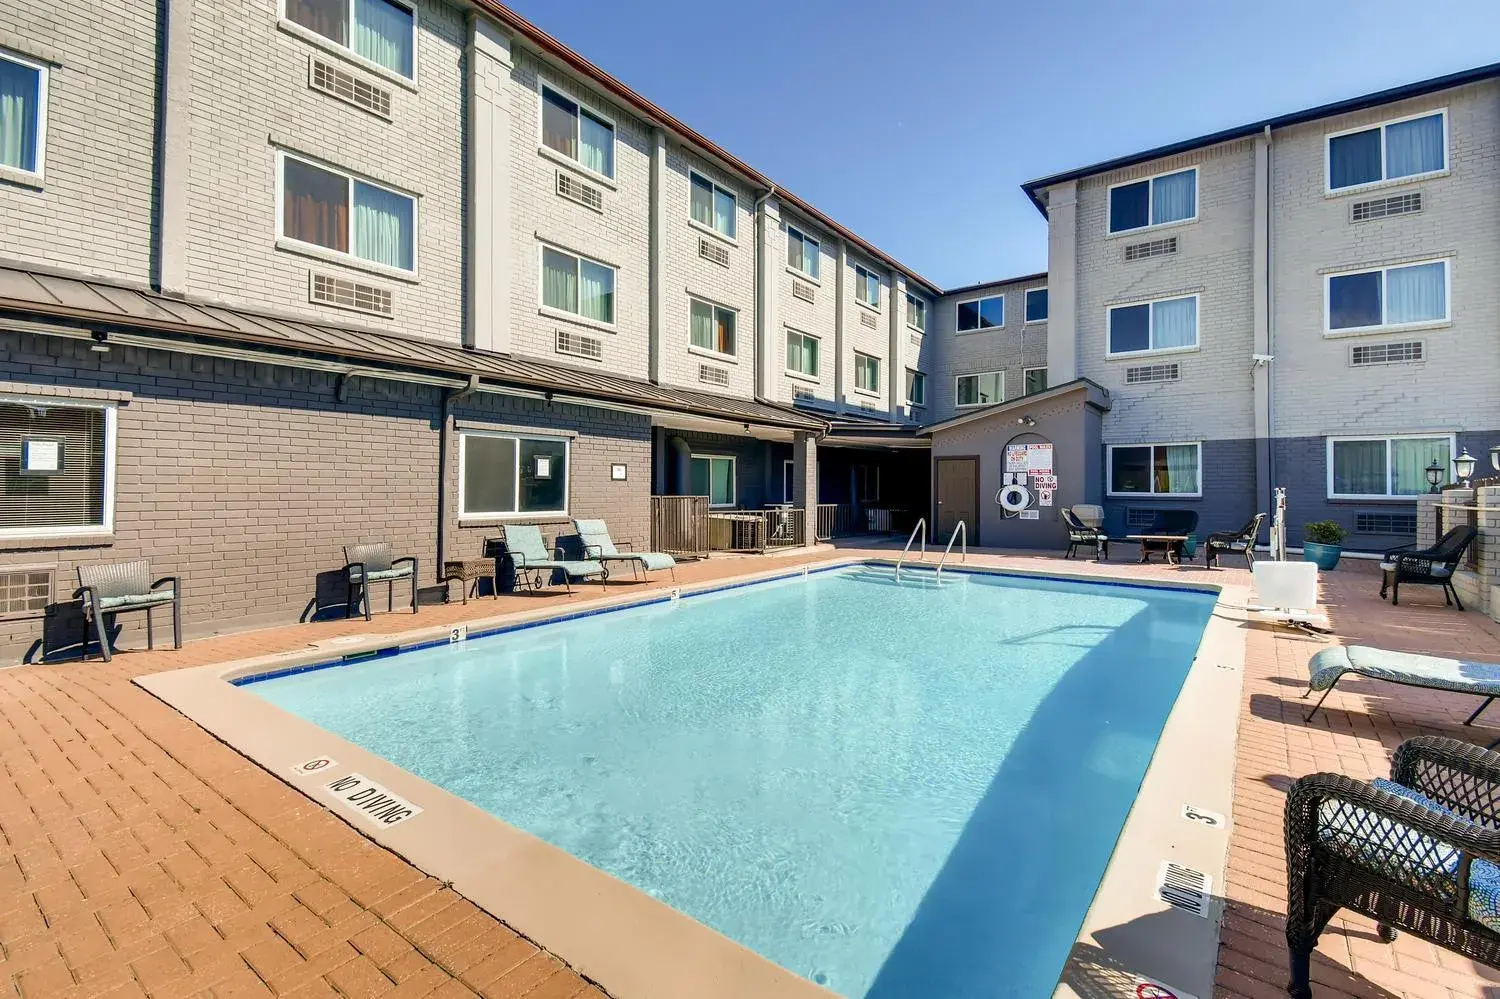 Swimming pool in Orangewood Inn and Suites Midtown